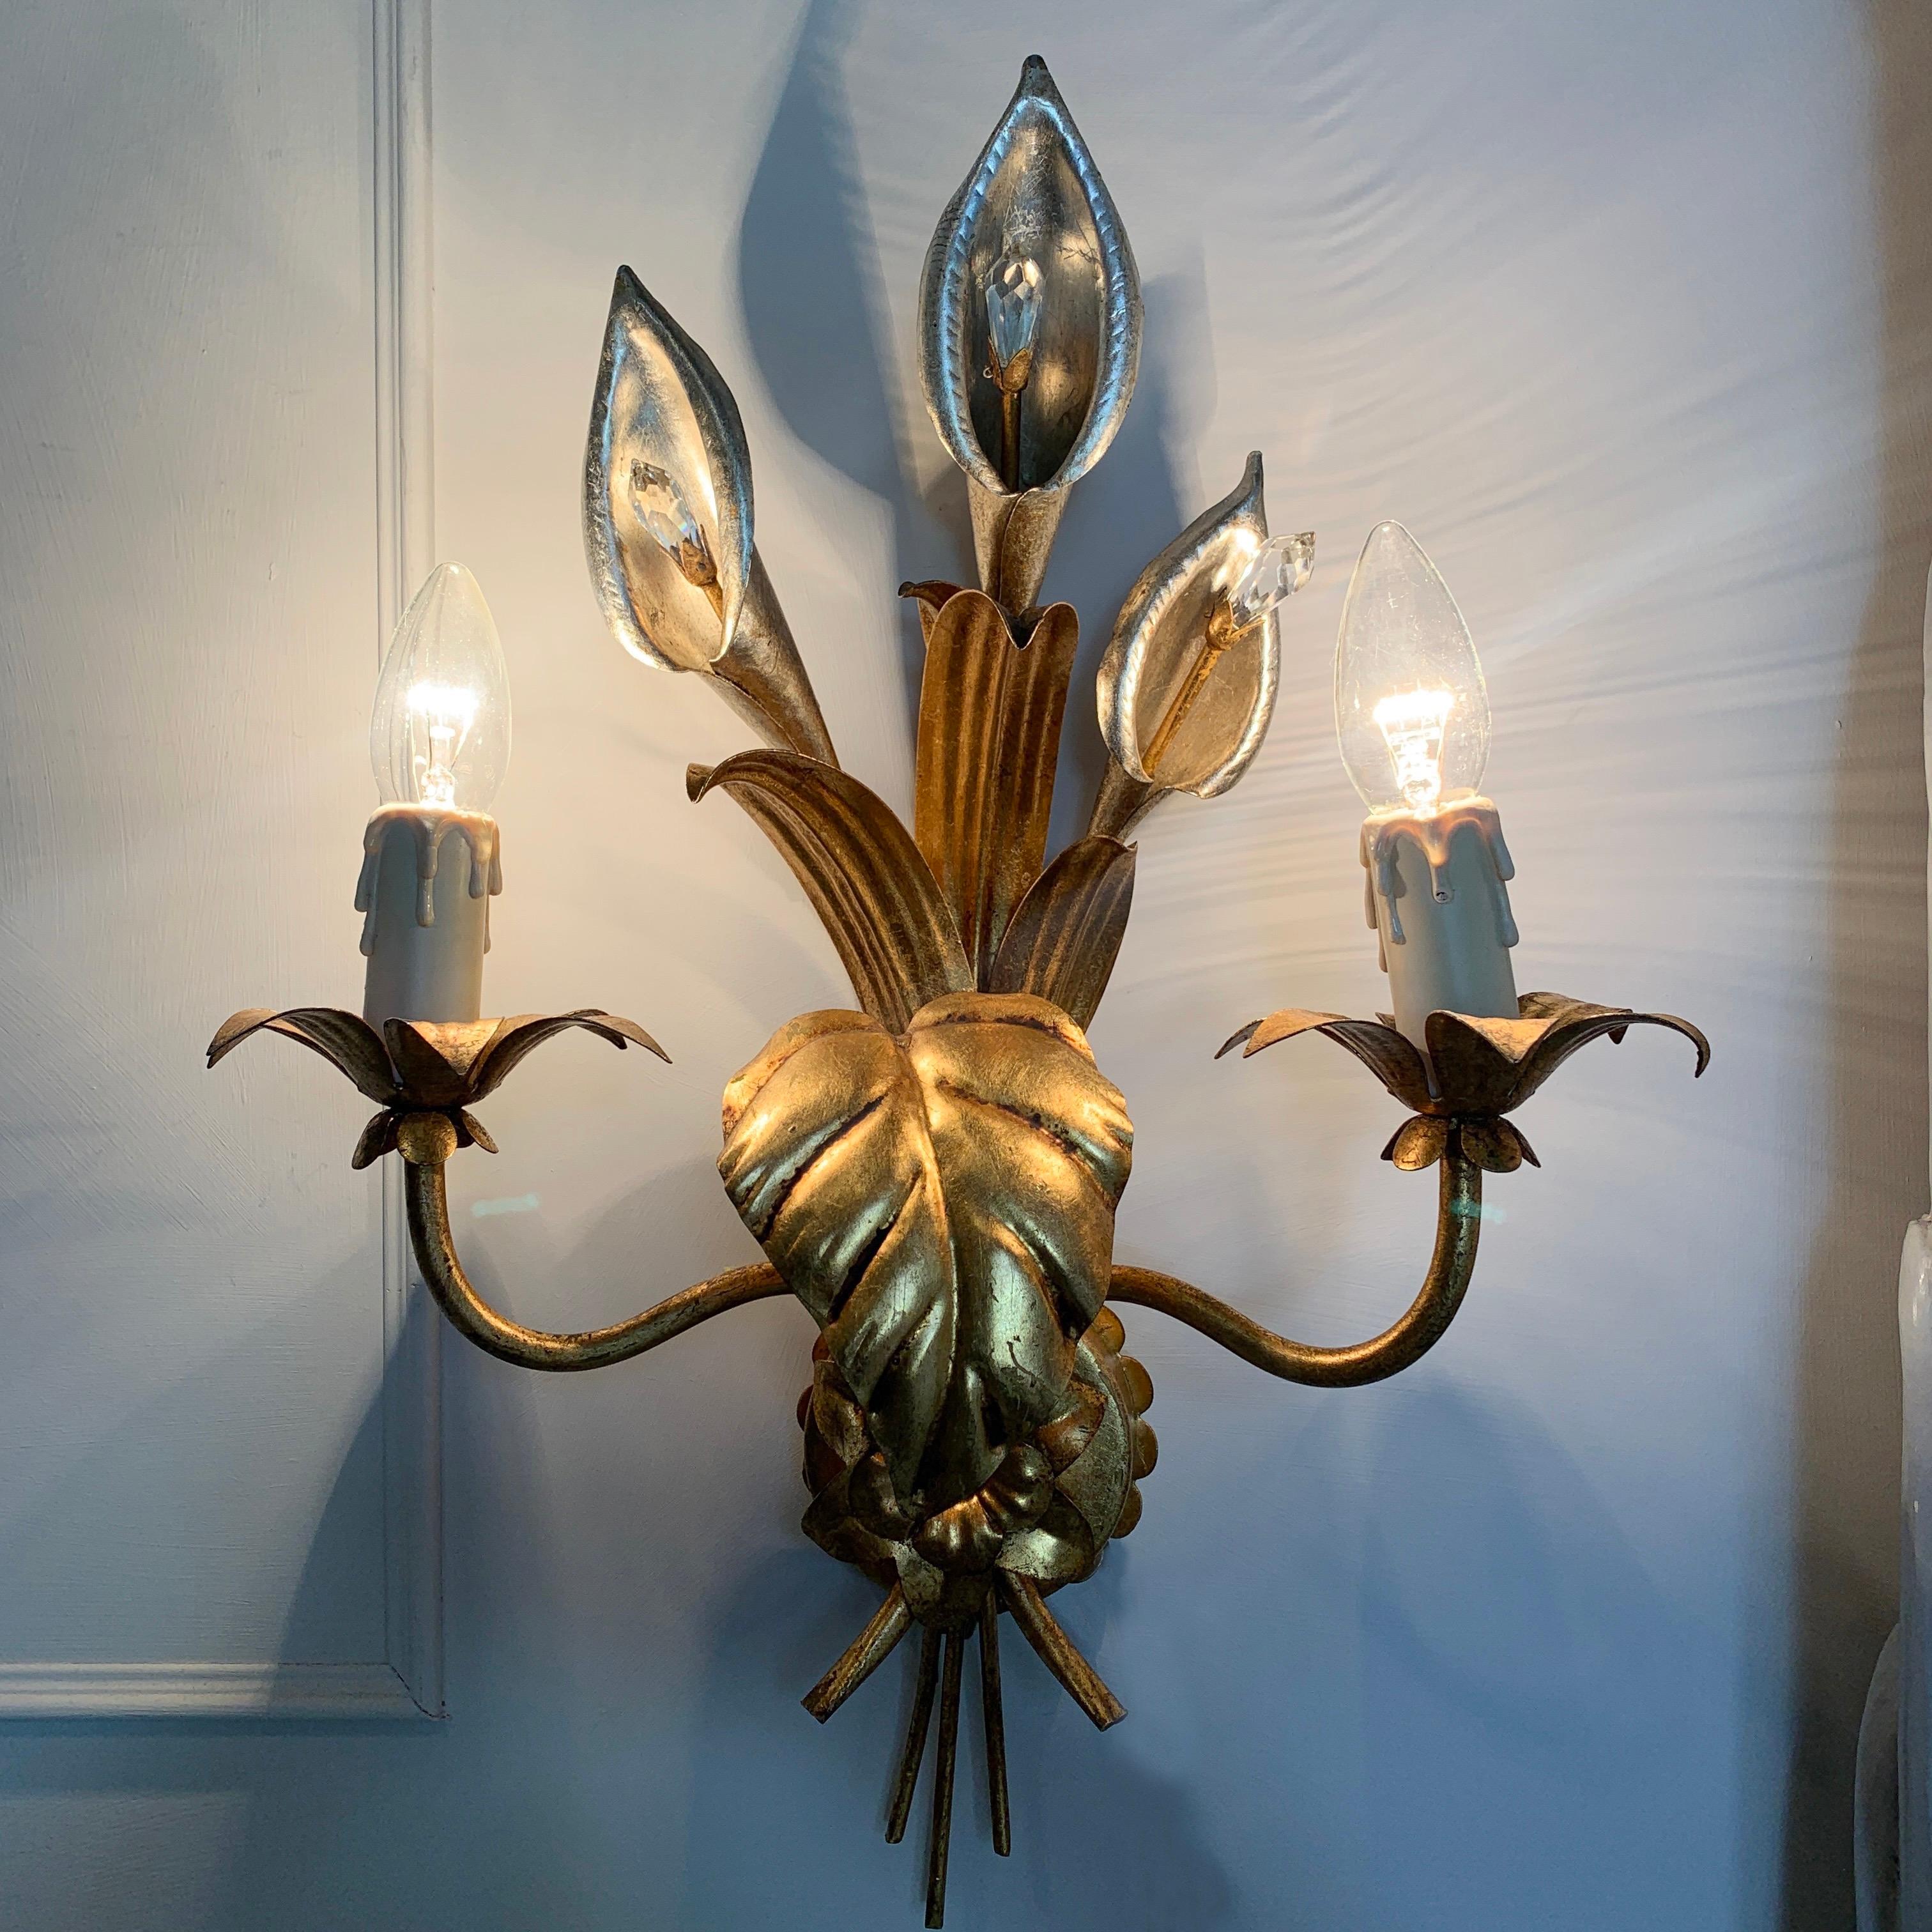 Paar Hans Kögl Calla-Lilien-Wandleuchter, um 1970
Wunderschönes silbernes und vergoldetes Calla-Blumen-Design

Jede silberne Calla-Lilie hat in der Mitte ein Staubgefäß in facettiertem Swarovski Kristall.
Es gibt 2 Glühbirnenfassungen mit unechten